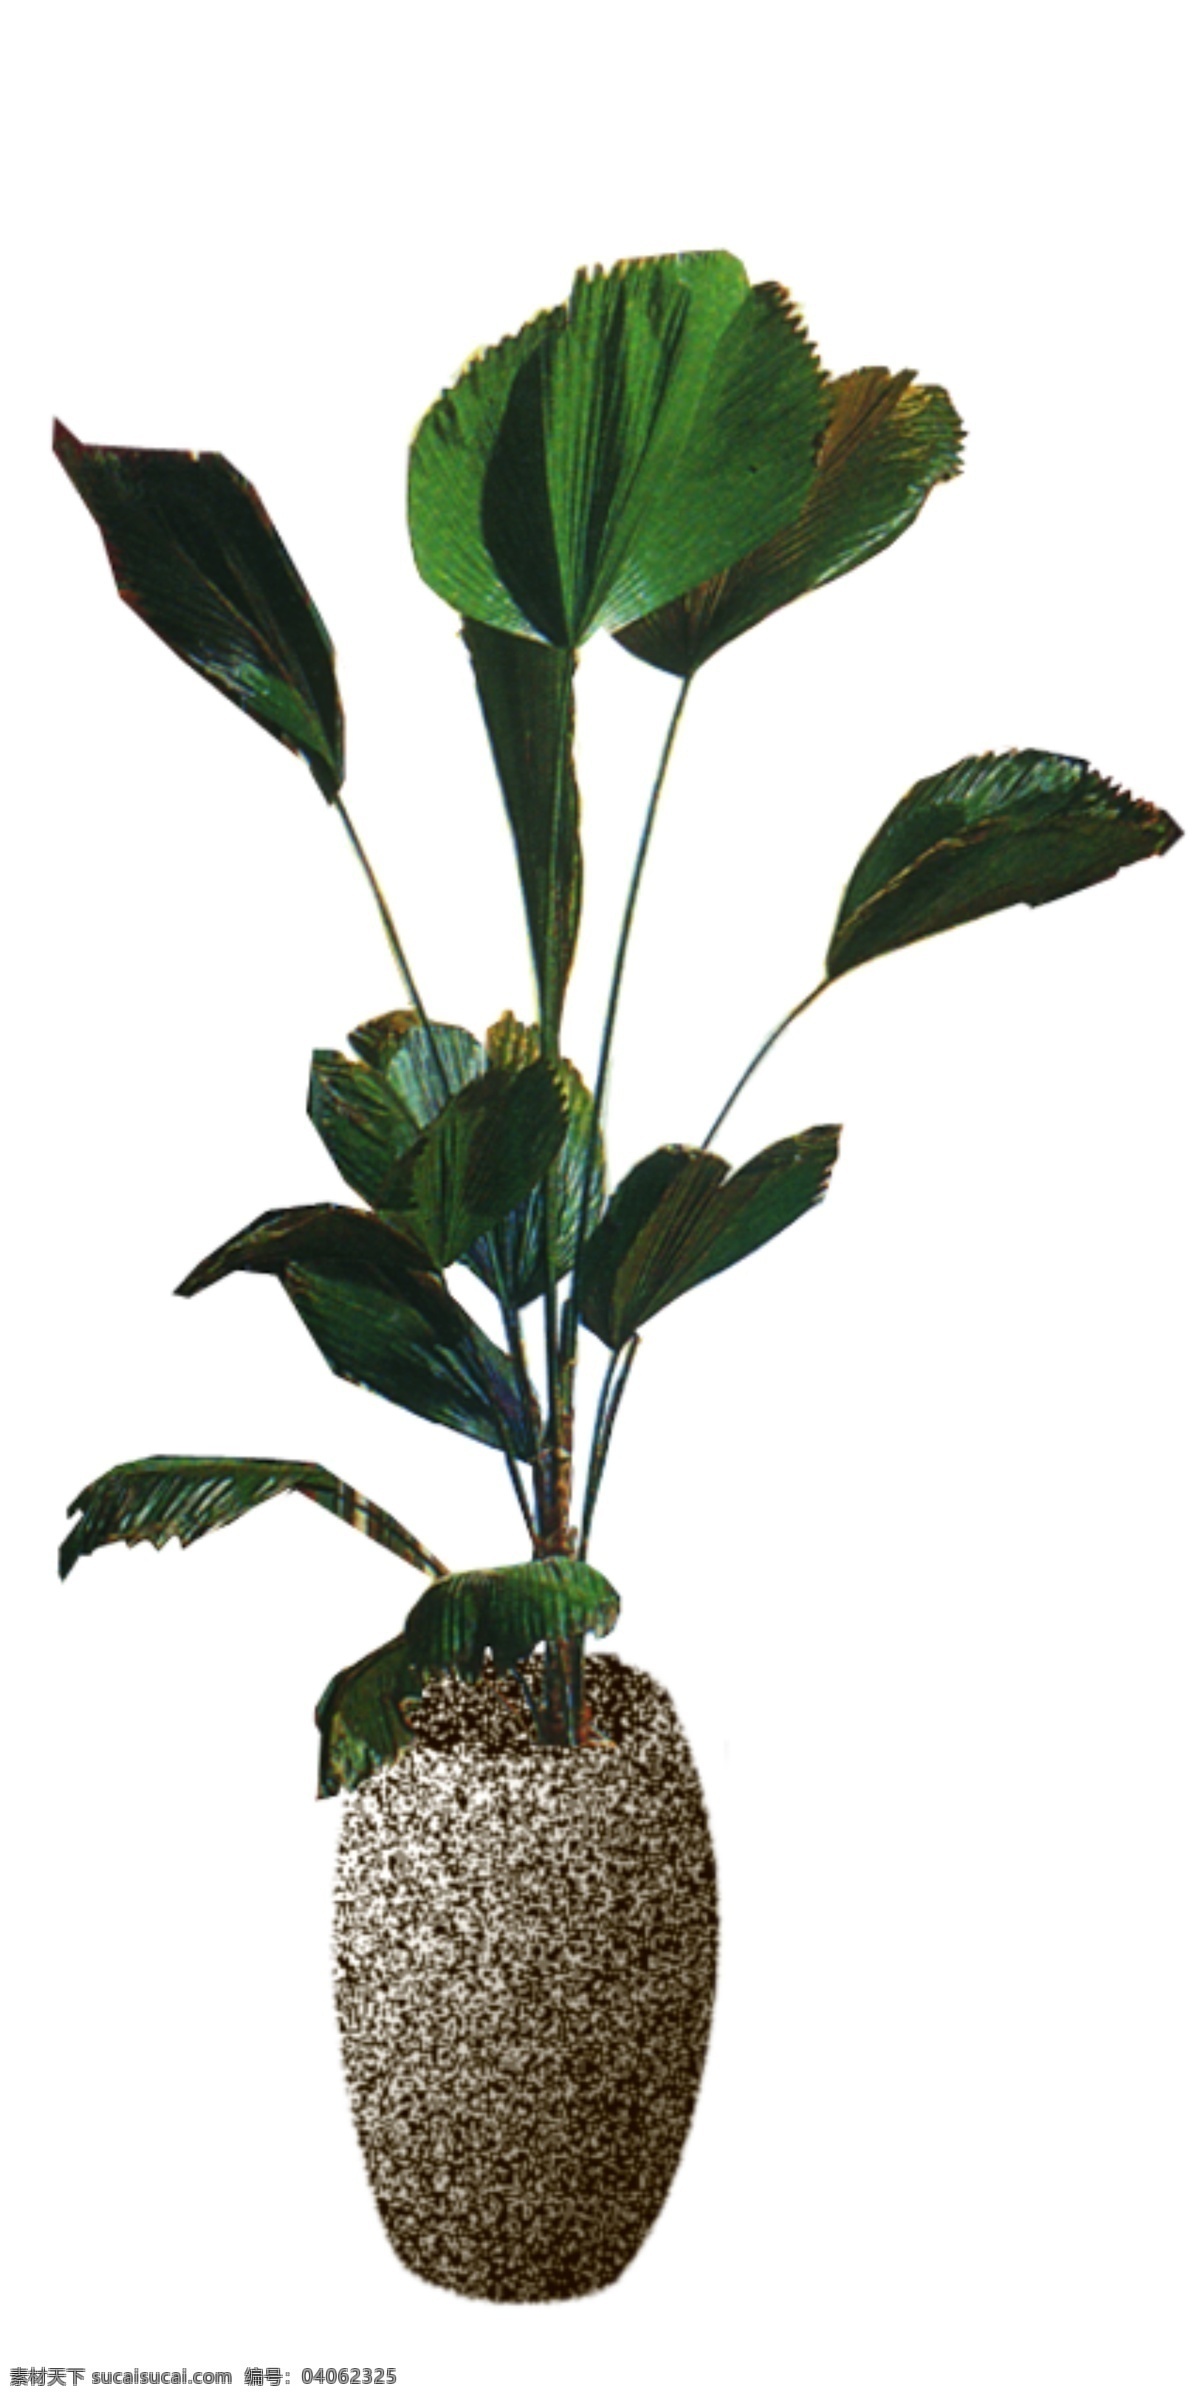 室内 植物 花草装饰 室内植物 装饰素材 室内装饰用图